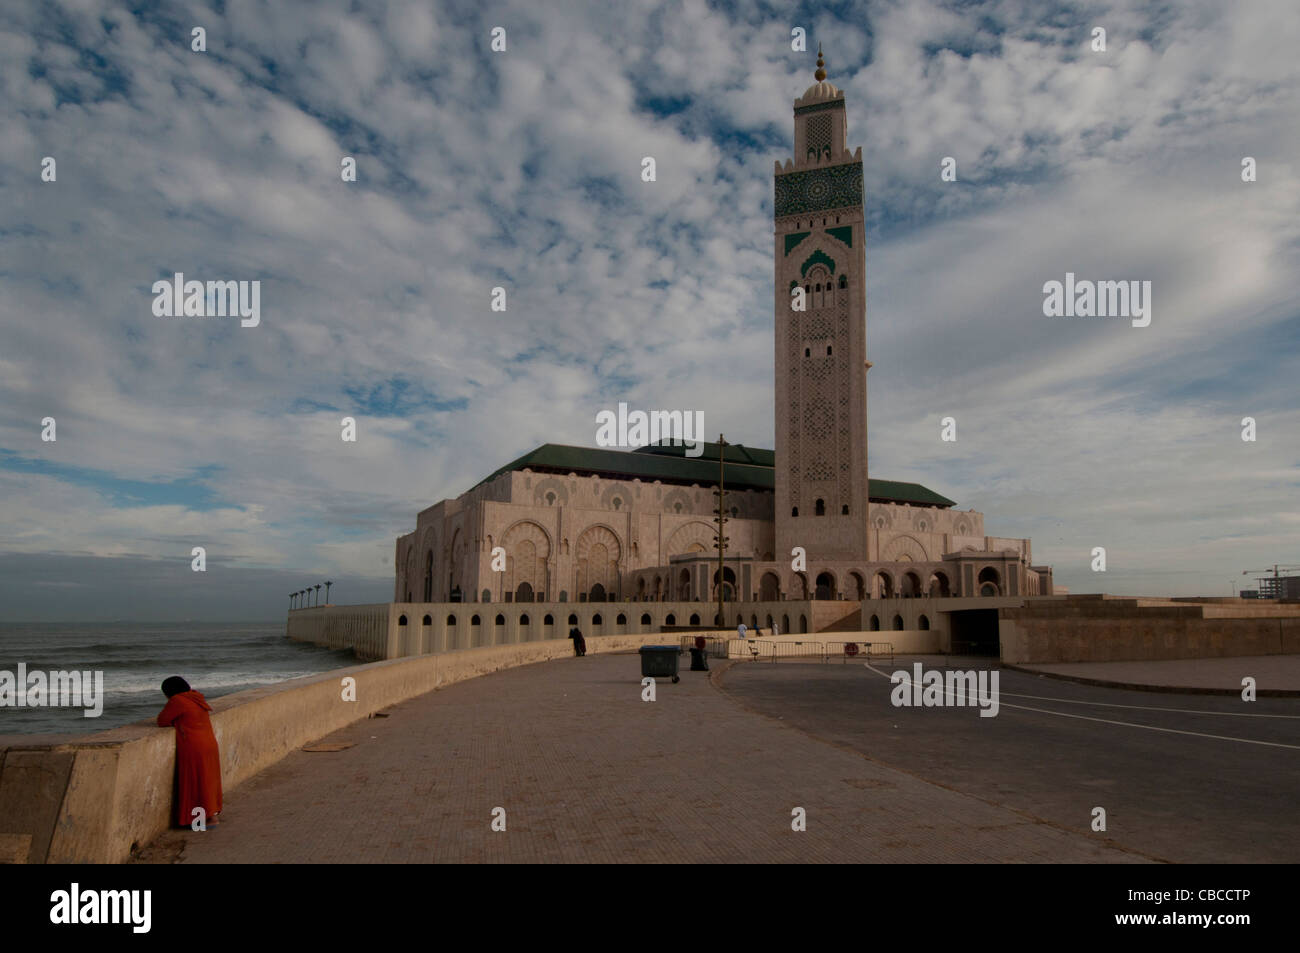 Hassan II mosque at Casablanca Morocco, Boulevard Sidi Mohammed Ben Abdellah Stock Photo